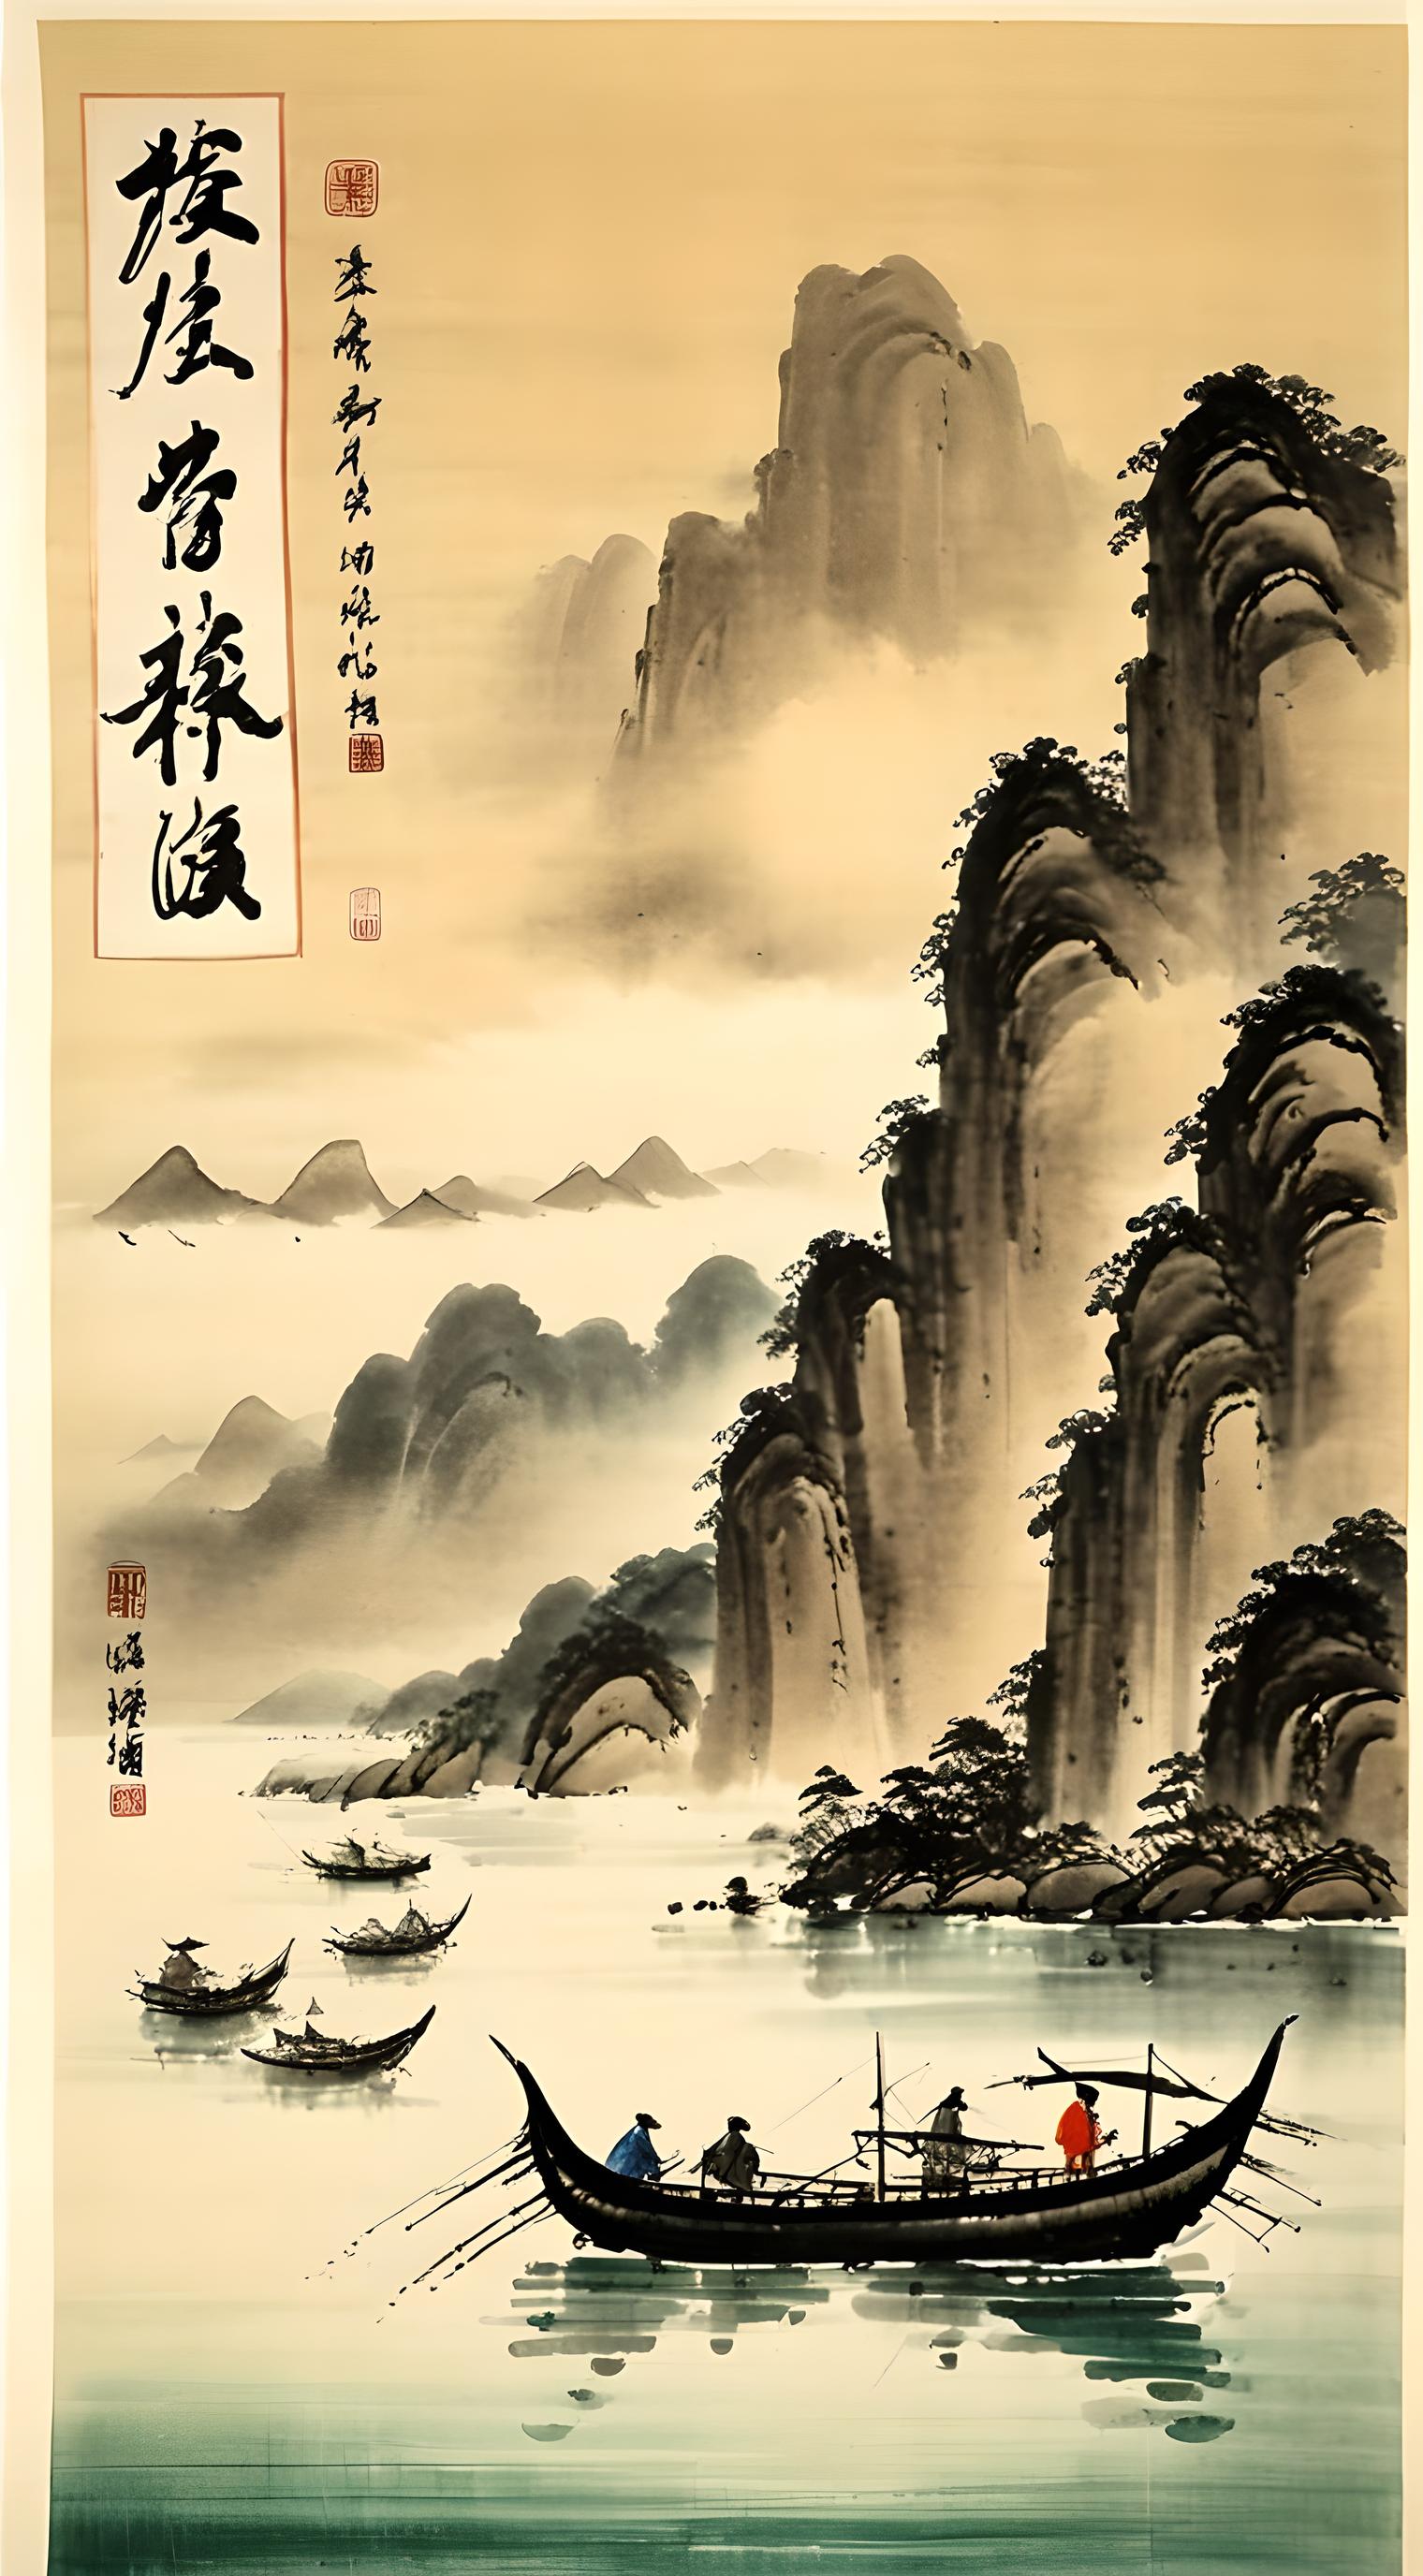 中式水墨山水画